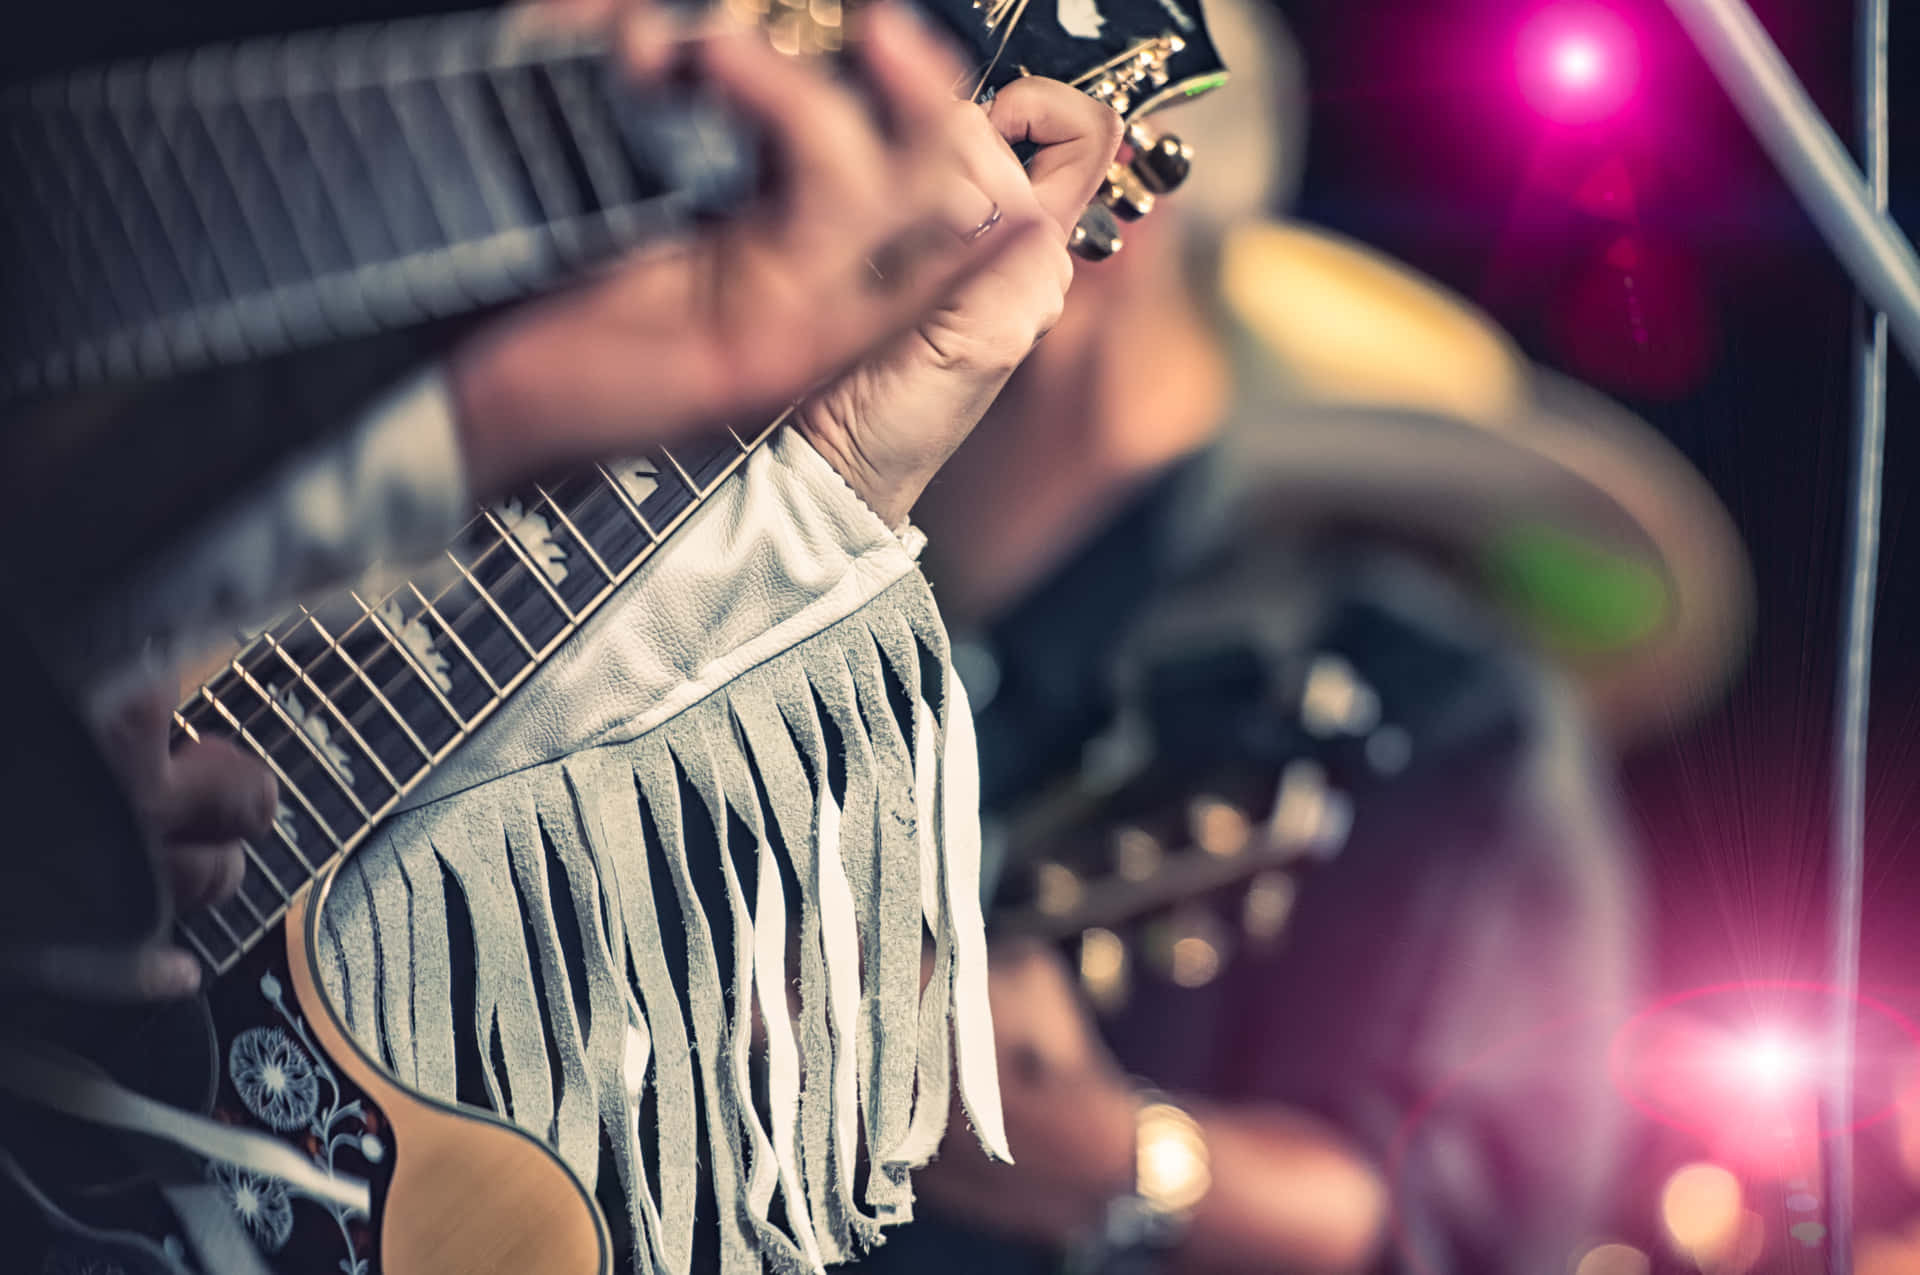 Billede af person med guitar, der spiller musik i abstrakte farver.